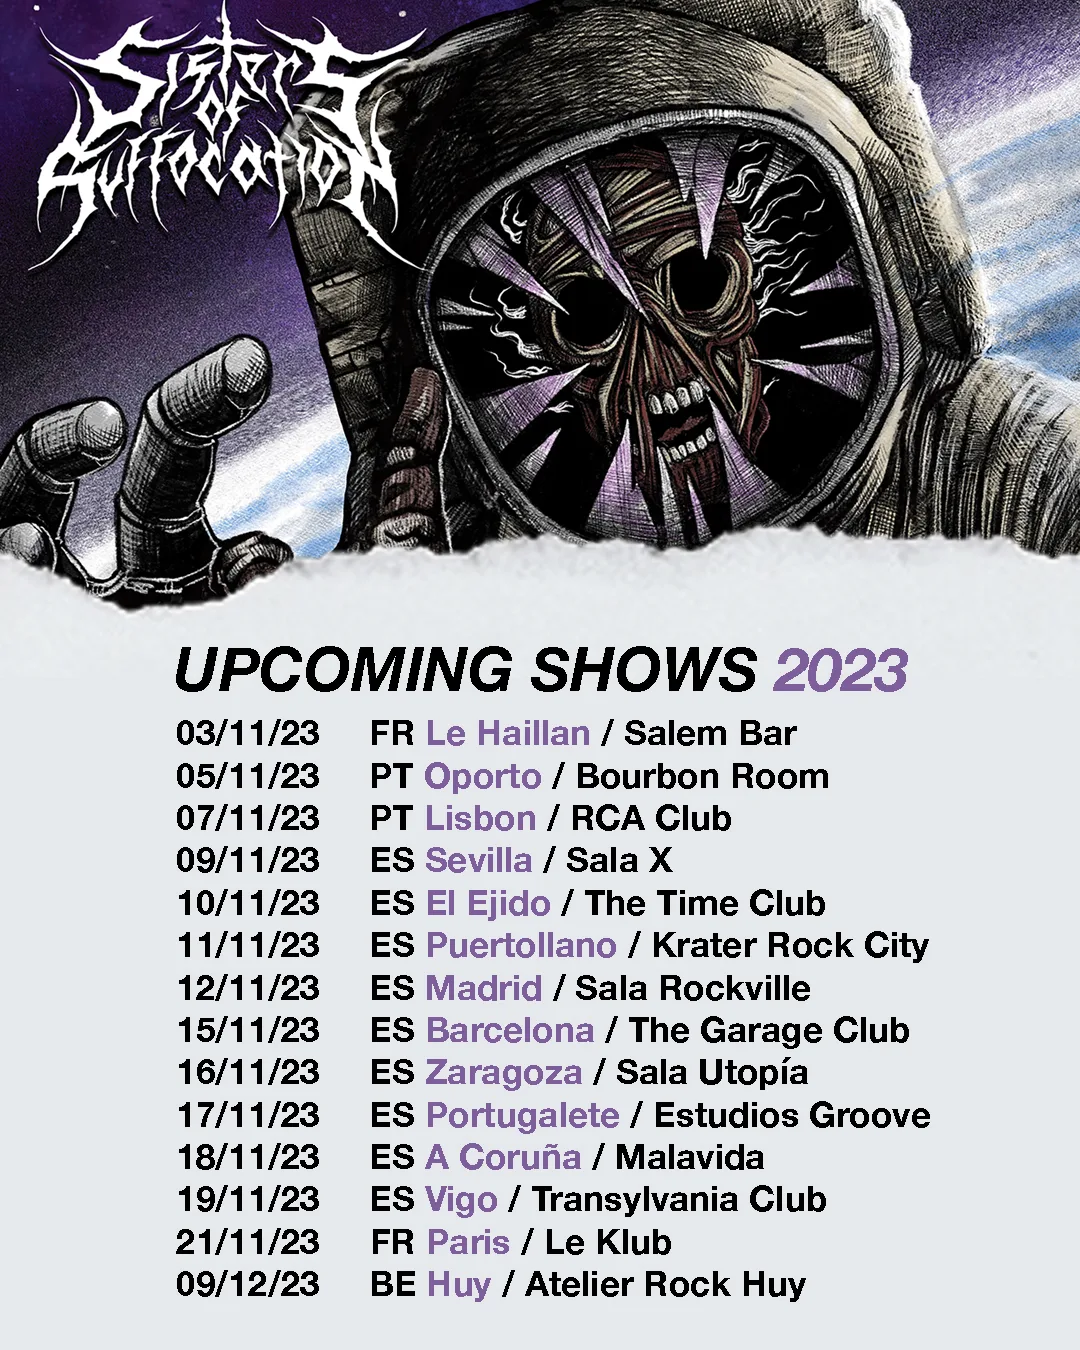 Sisters Of Suffocation conciertos en noviembre